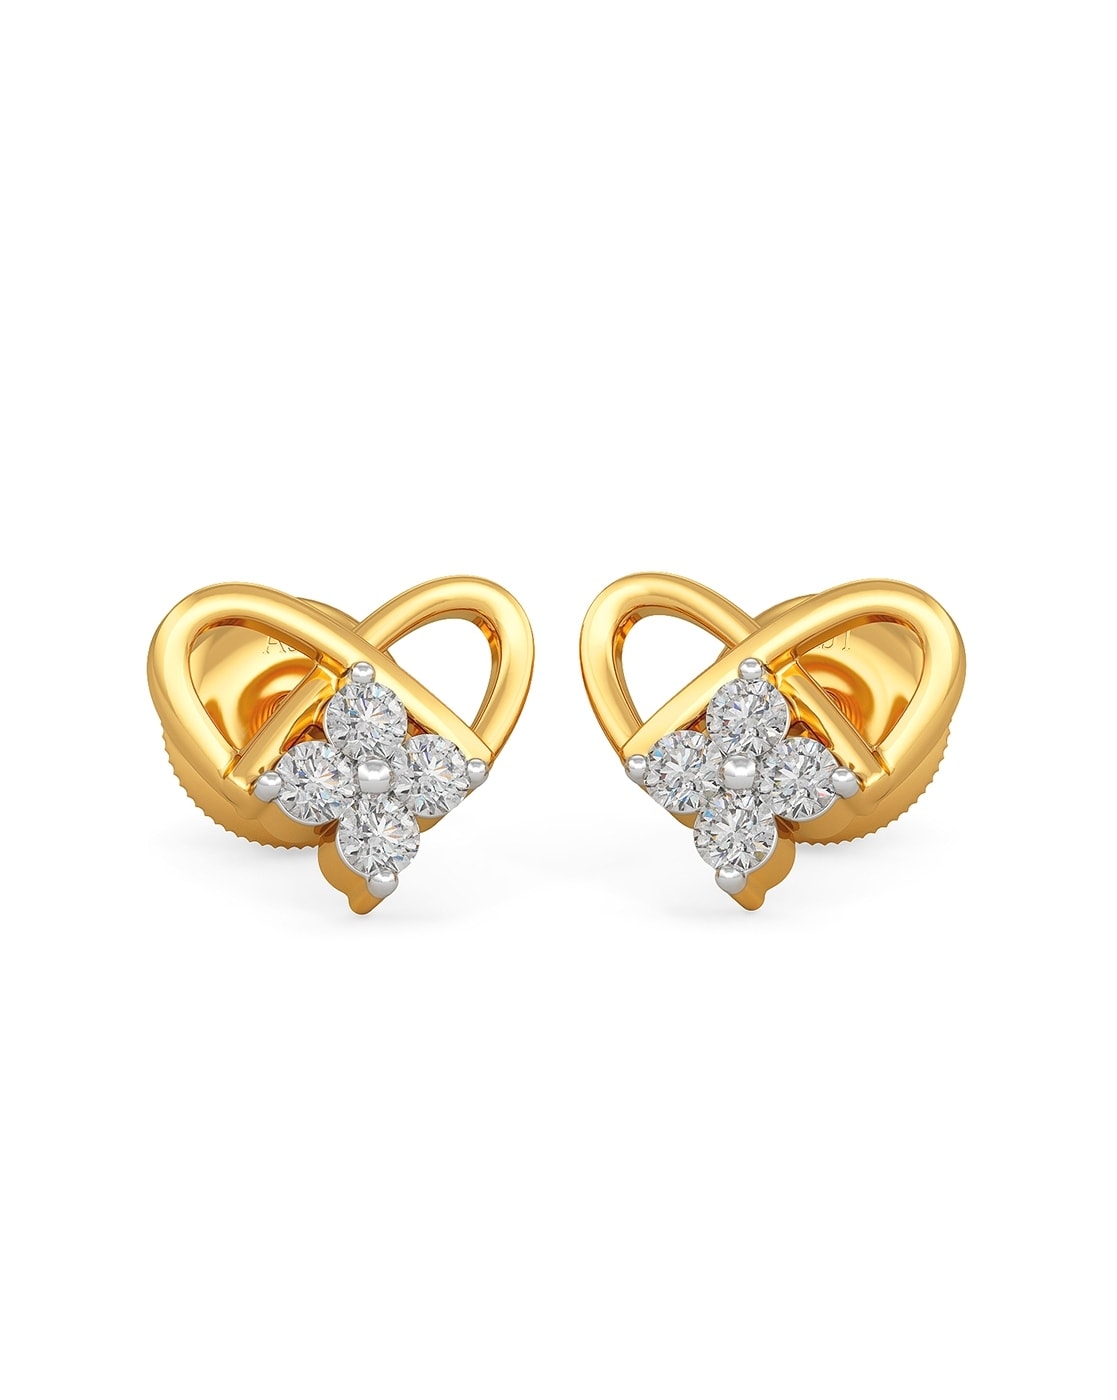 18K Gold & Diamond Flower Earrings with Screw Backs for Girls